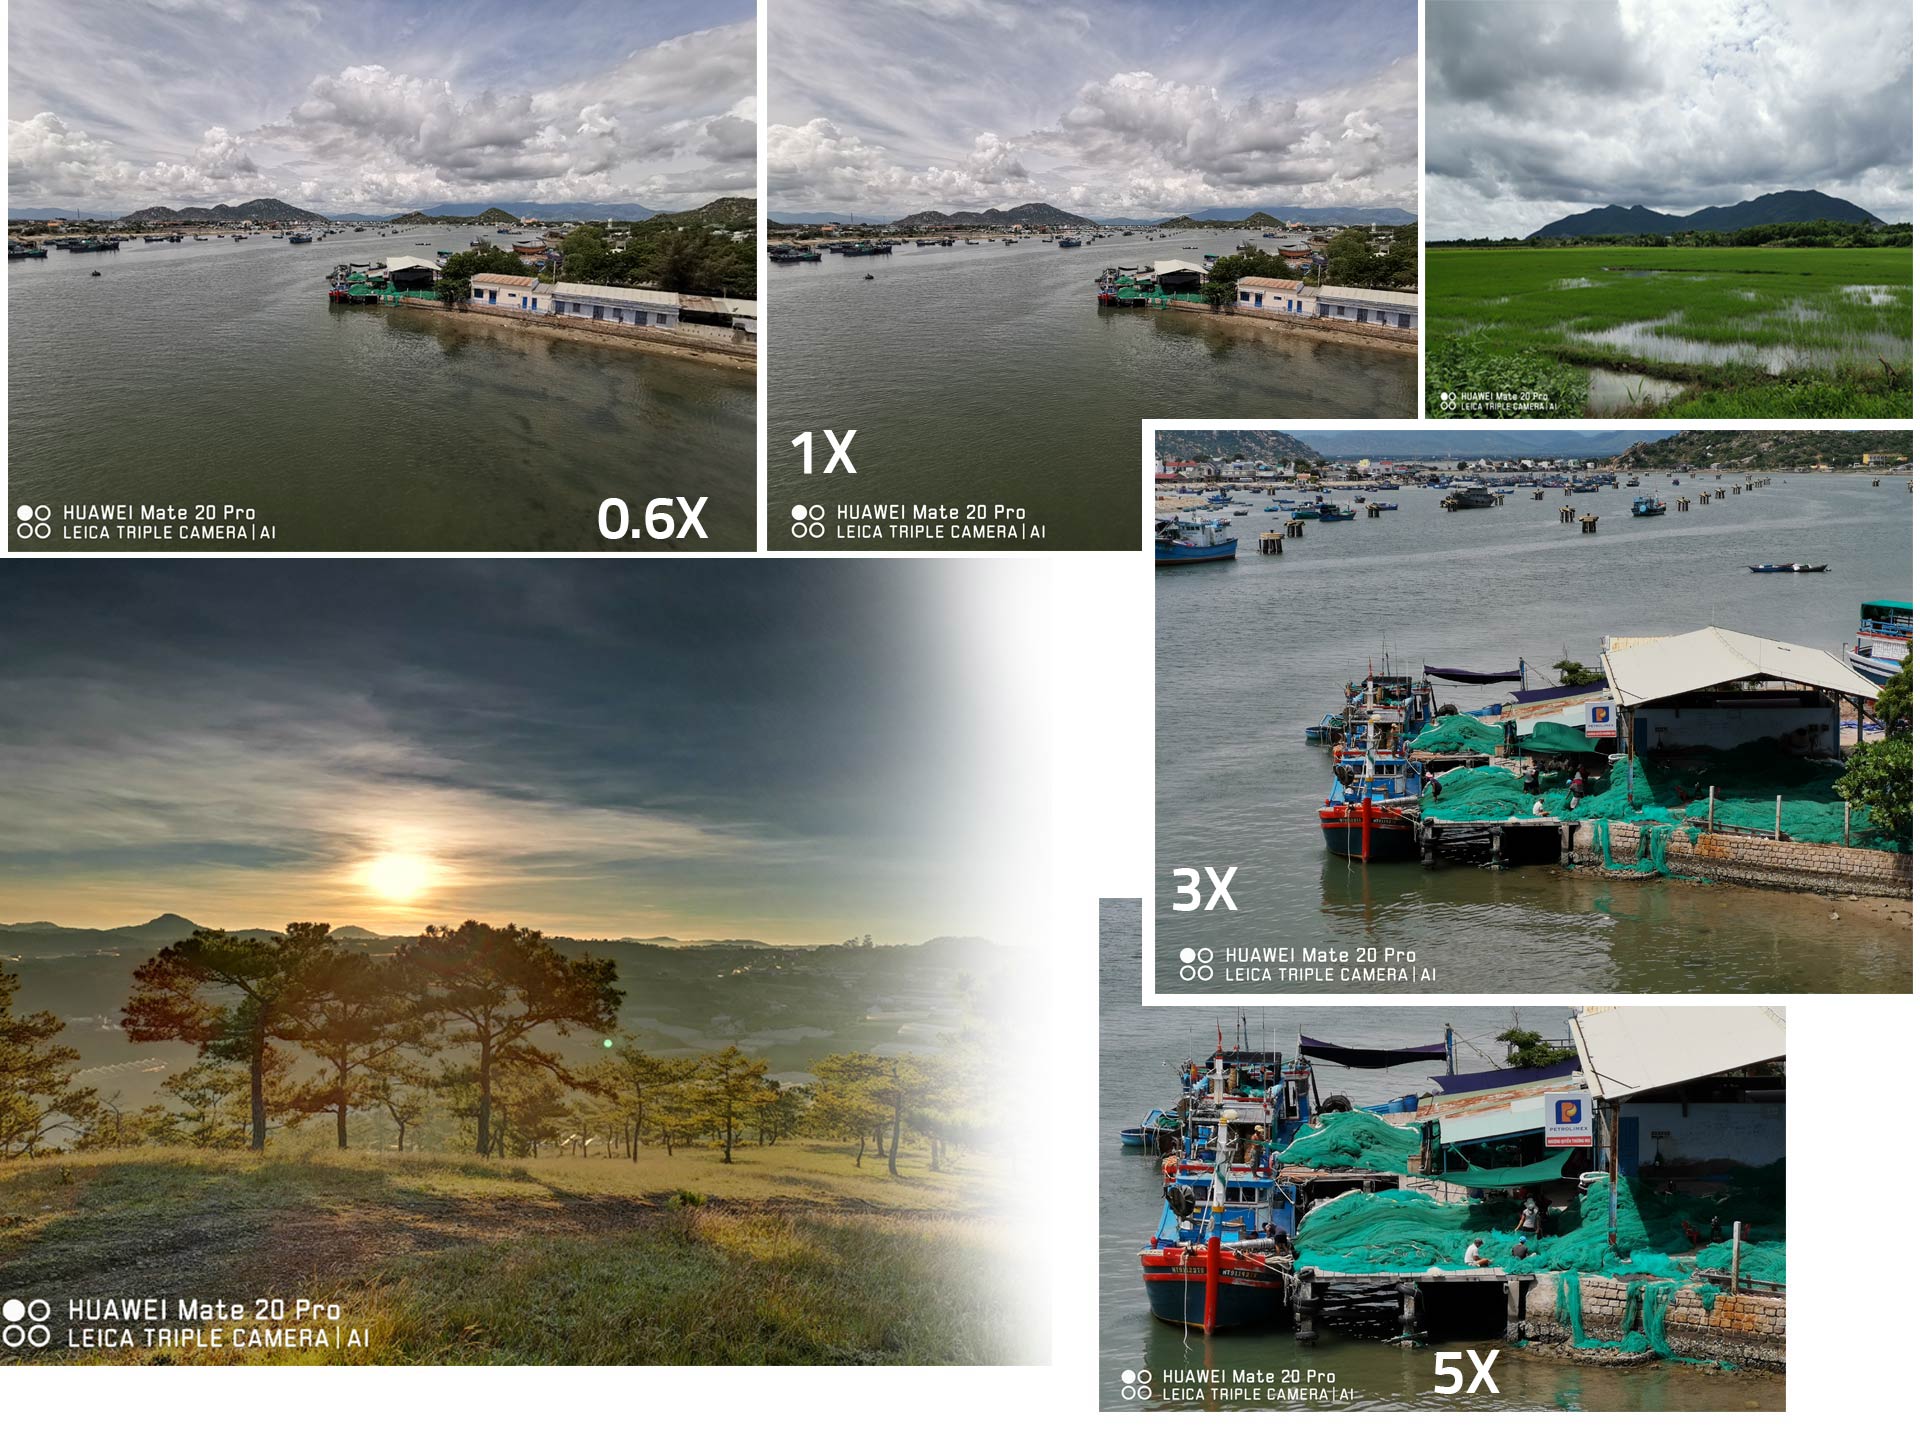 Huawei Mate 20 Pro chụp ảnh quá đỉnh, nhìn là thích ngay - 5